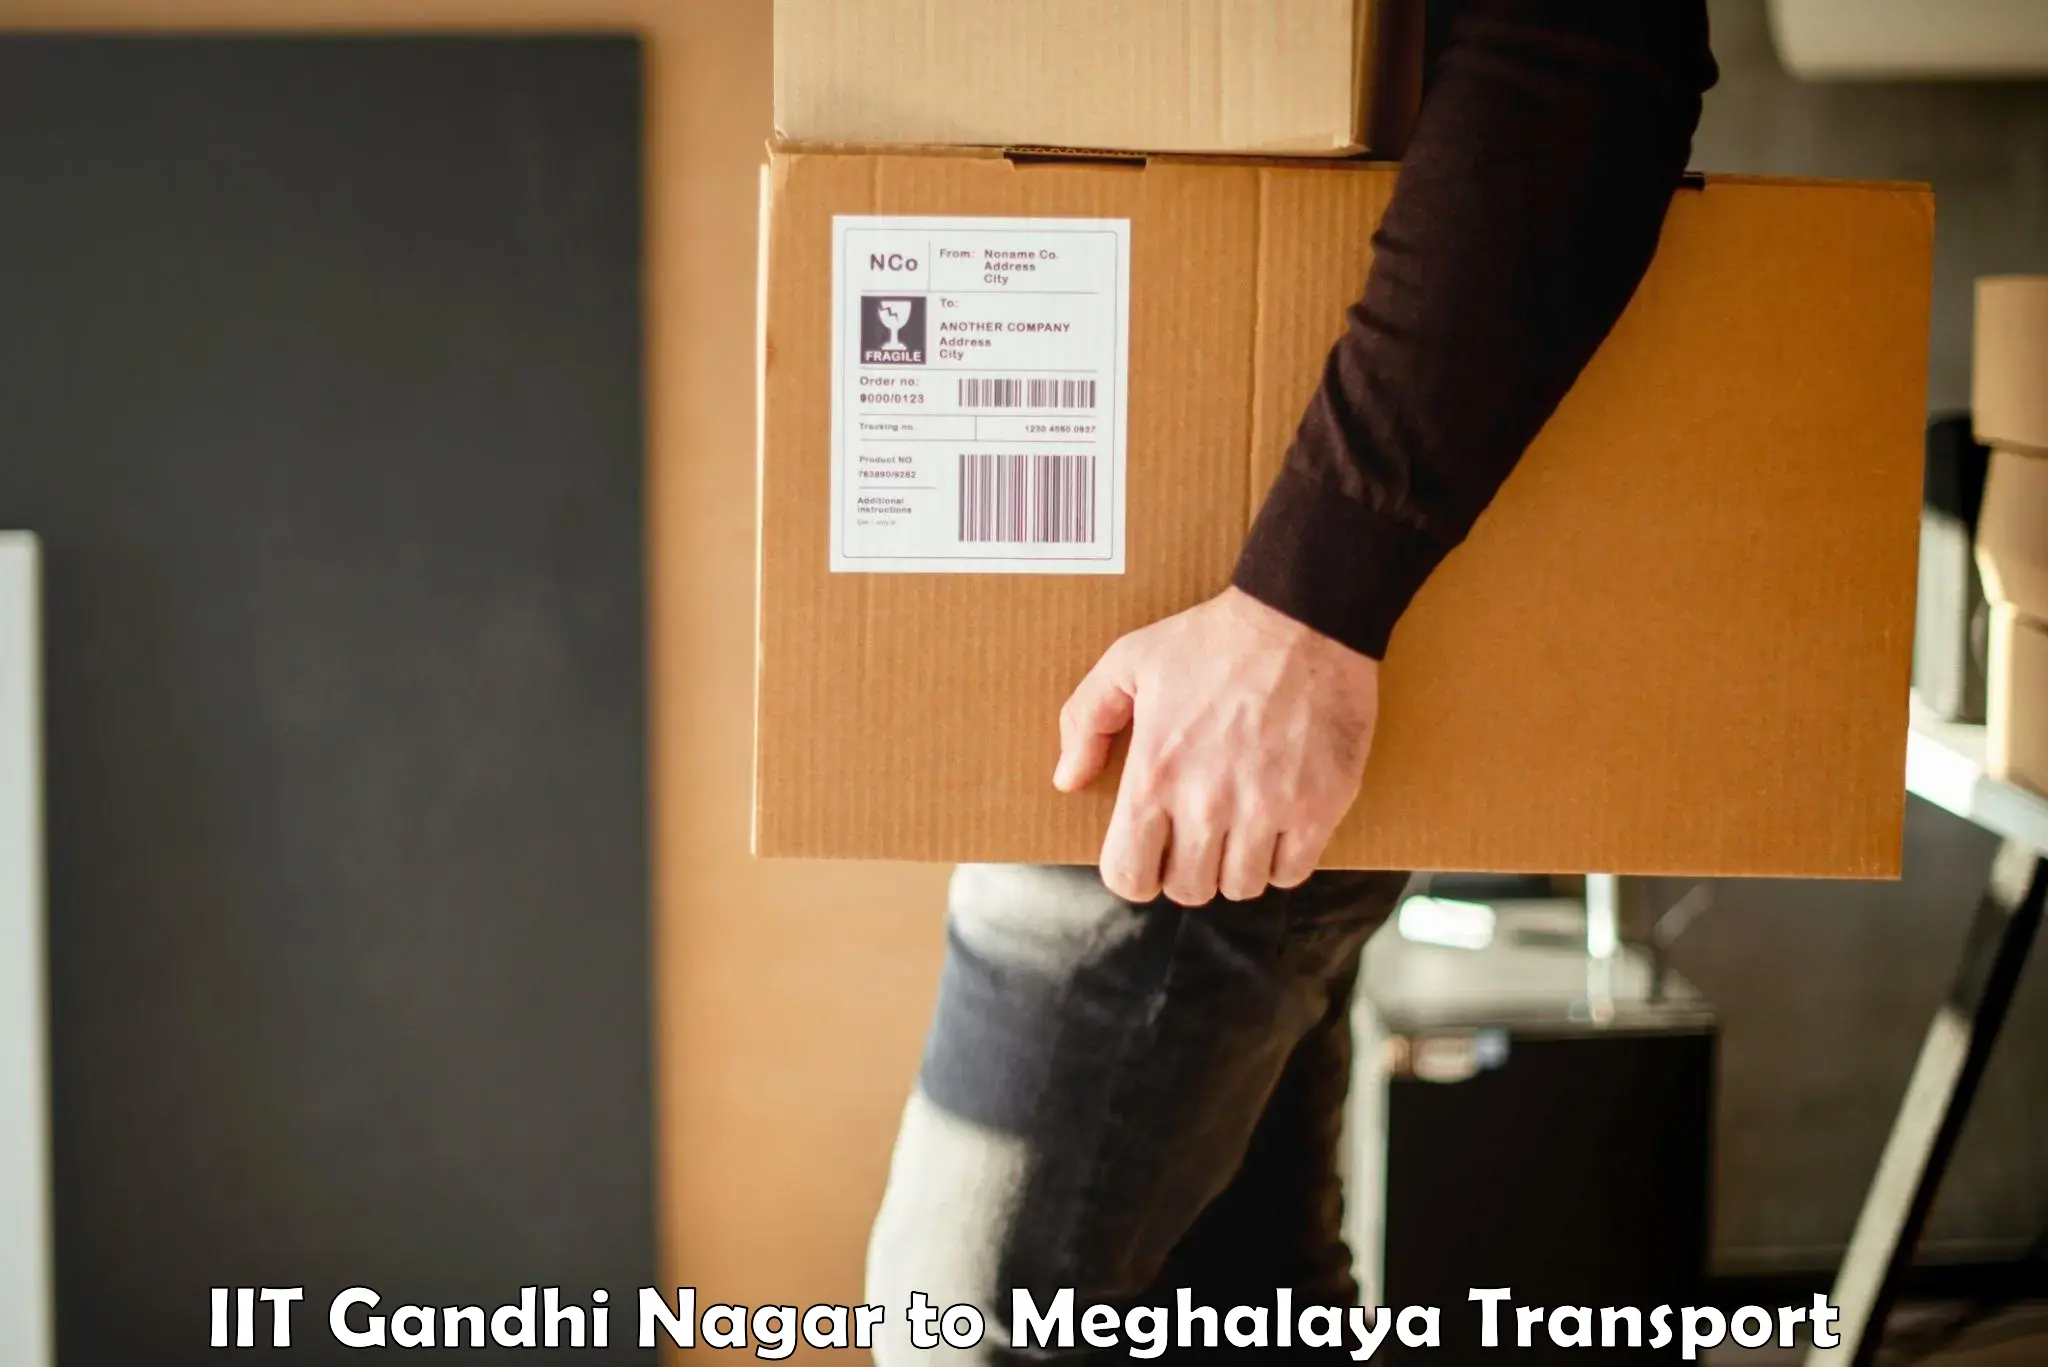 Online transport service IIT Gandhi Nagar to Meghalaya